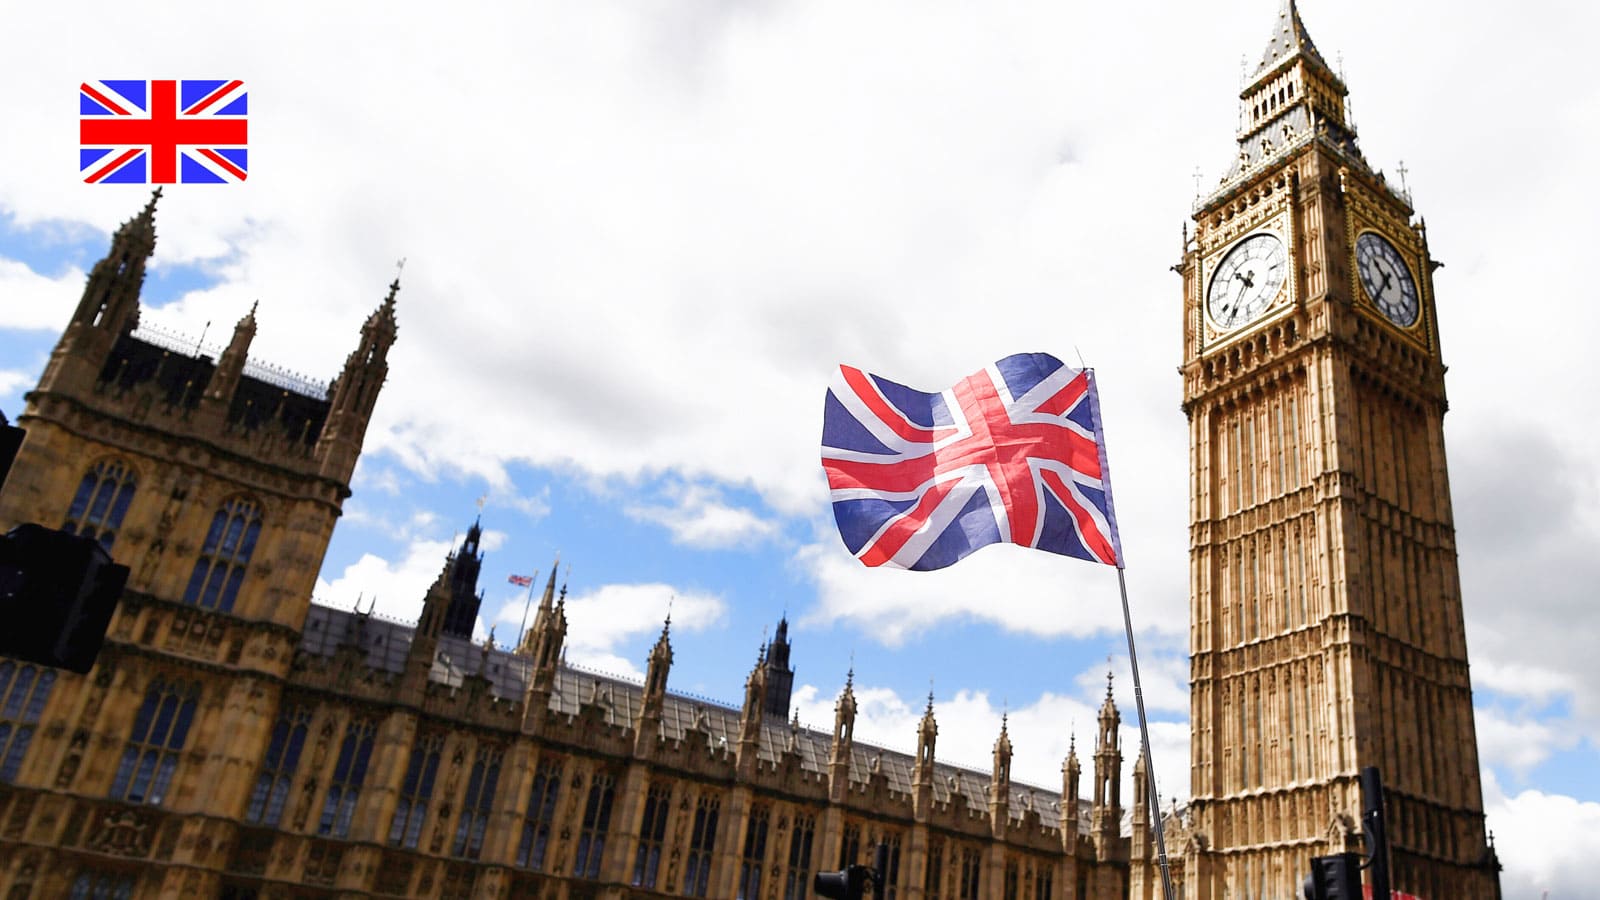 Сейчас визу Великобритании для развития своего бизнеса можно получить по двум программам: «Предприниматель» и «Инвестор».